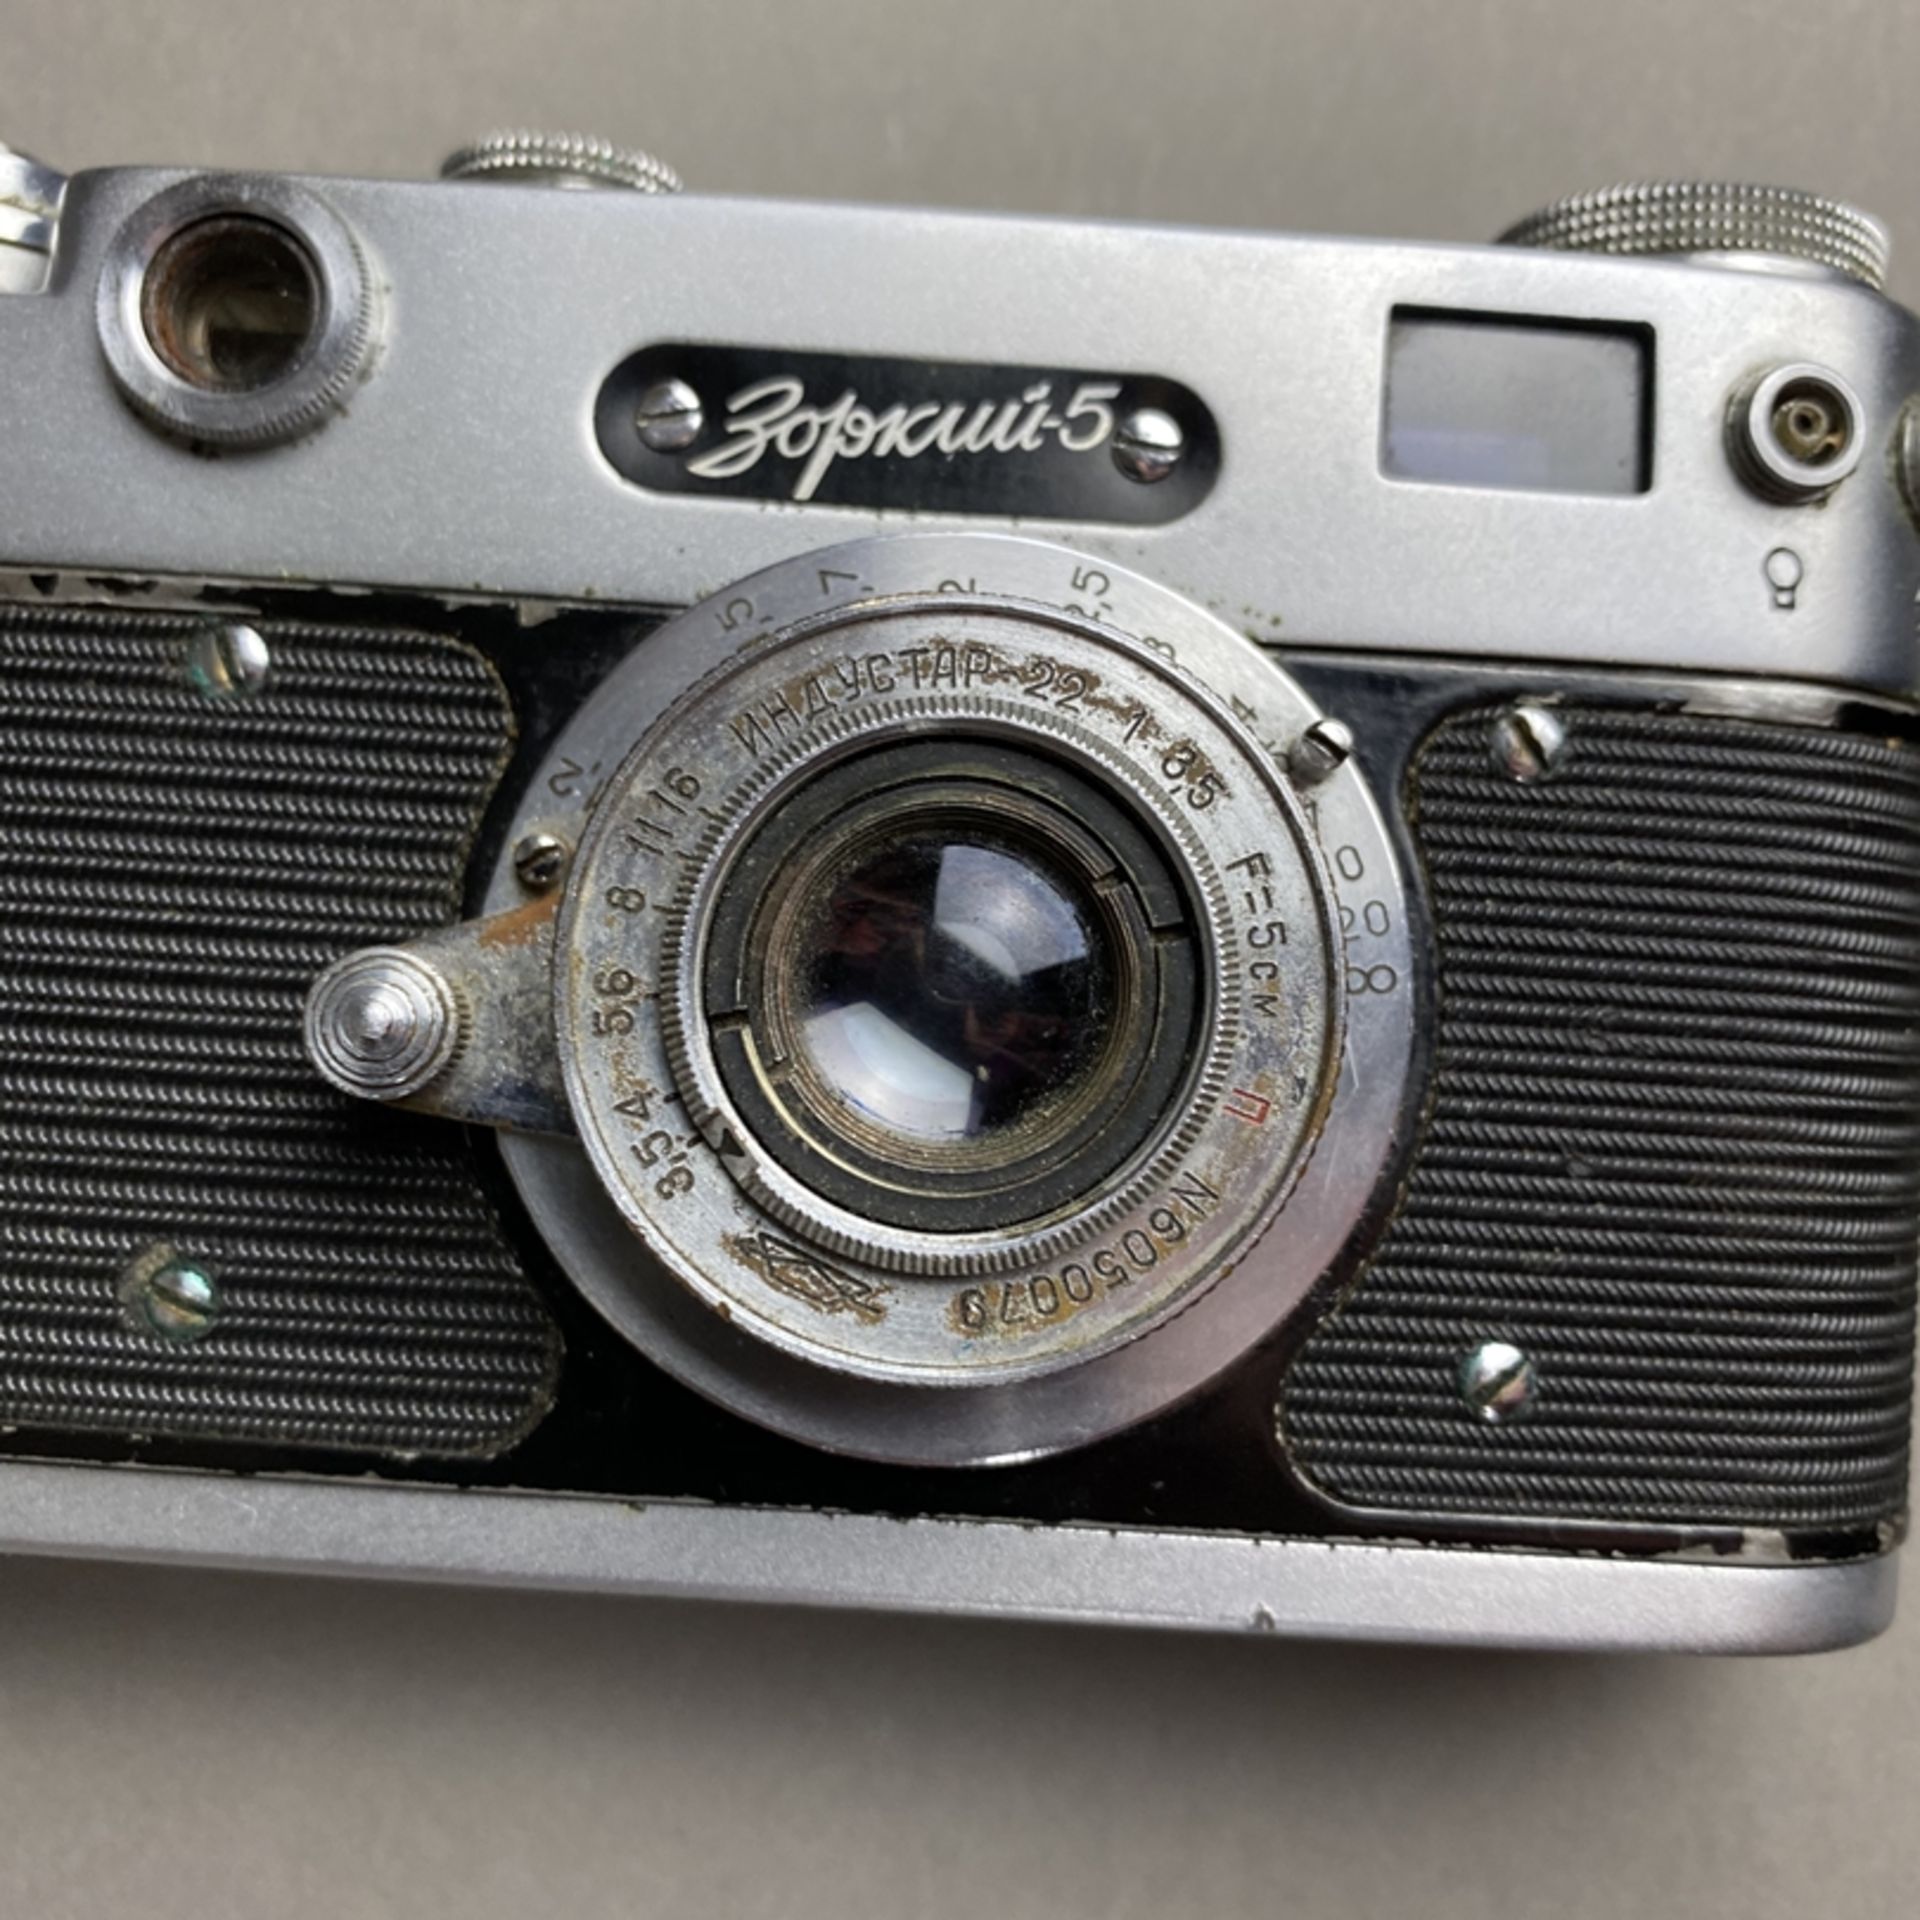 Zorki 5 - sowjetische Kleinbild-Sucherkamera, Gehäusenr. 59001972, Objektiv Industar 22, 1:35, F= - Bild 2 aus 7